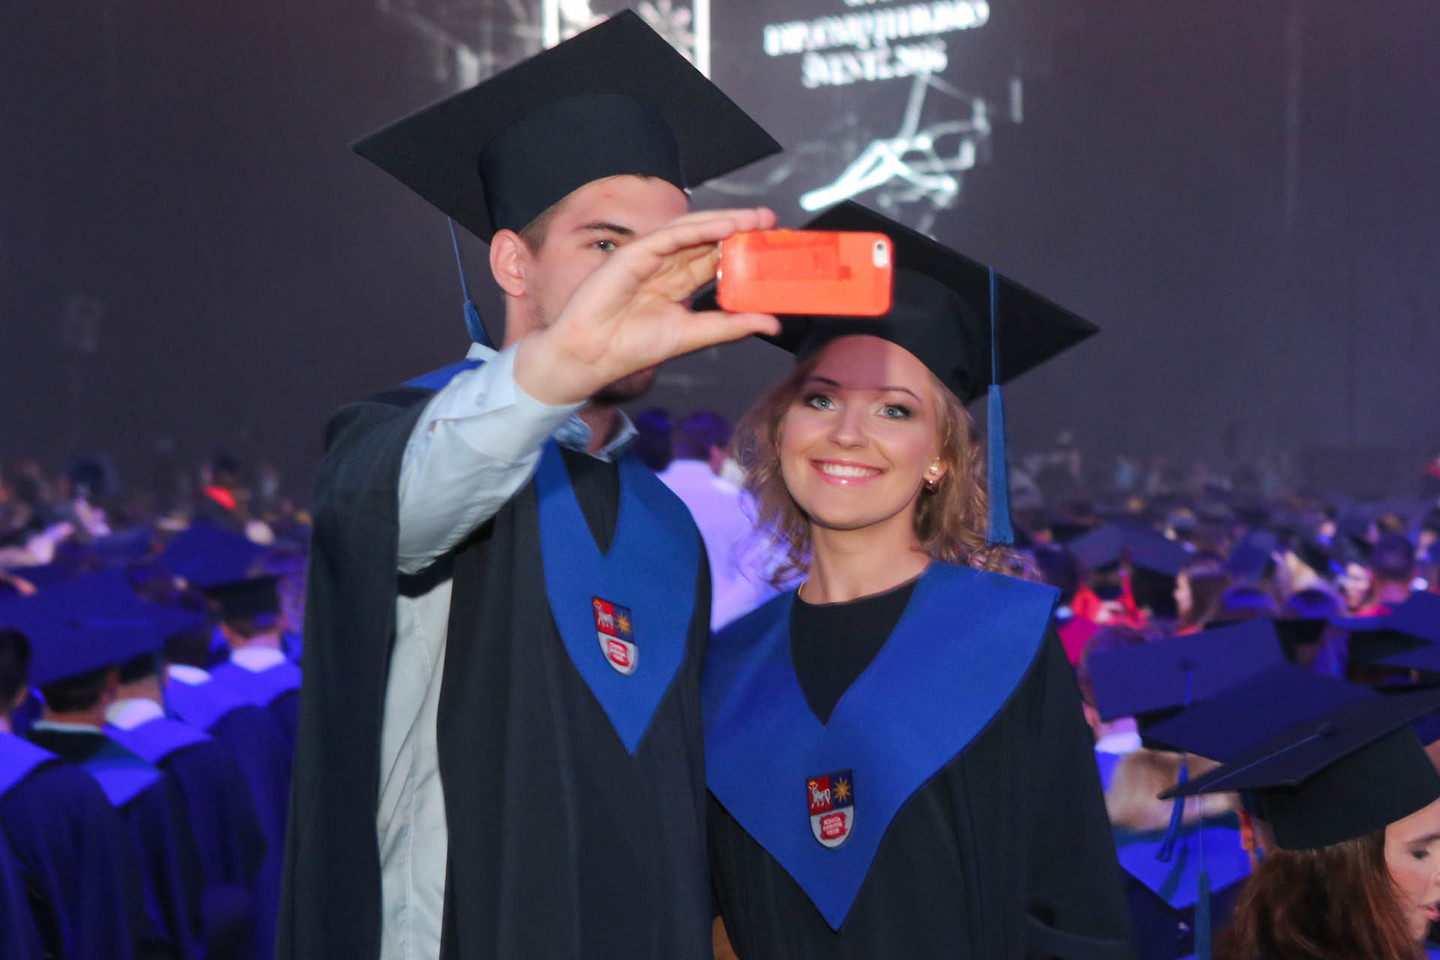 Kauno technologijos universiteto absolventų diplomų įteikimo šventė.